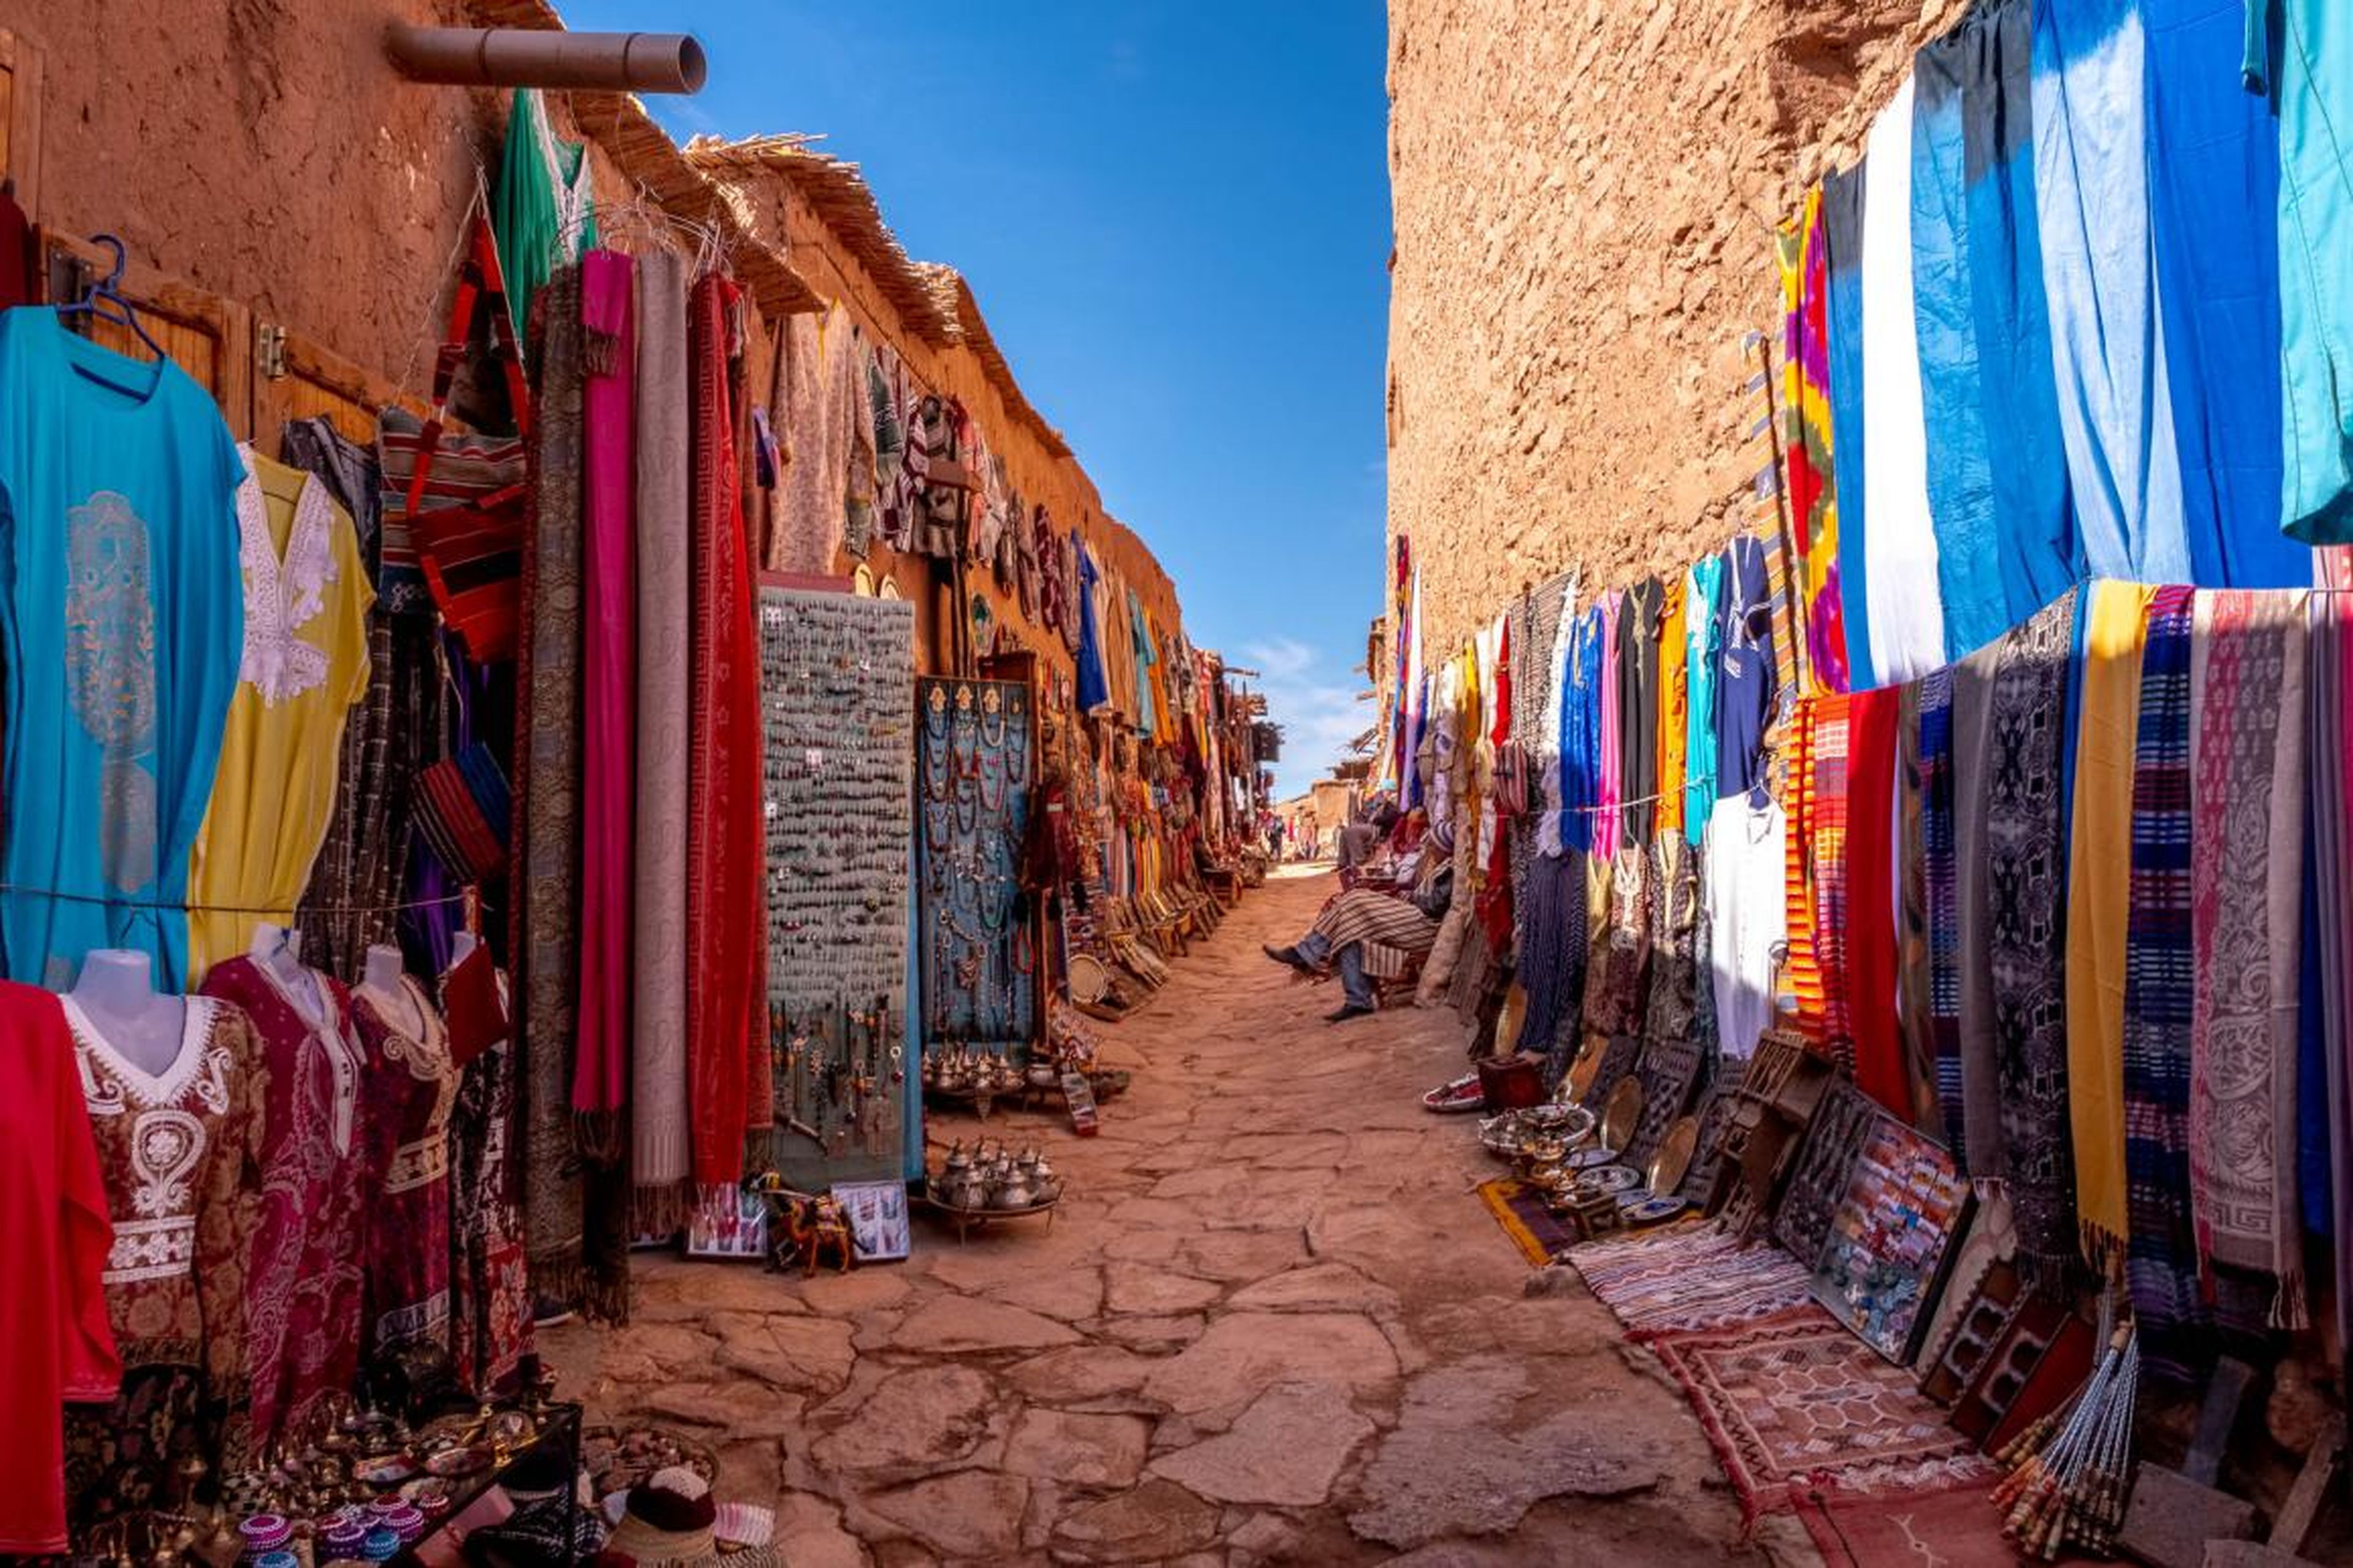 [RE] Los lugareños han establecido un pequeño mercado que vende bufandas hechas a mano, joyas y chilabas, o batas bereberes tradicionales.